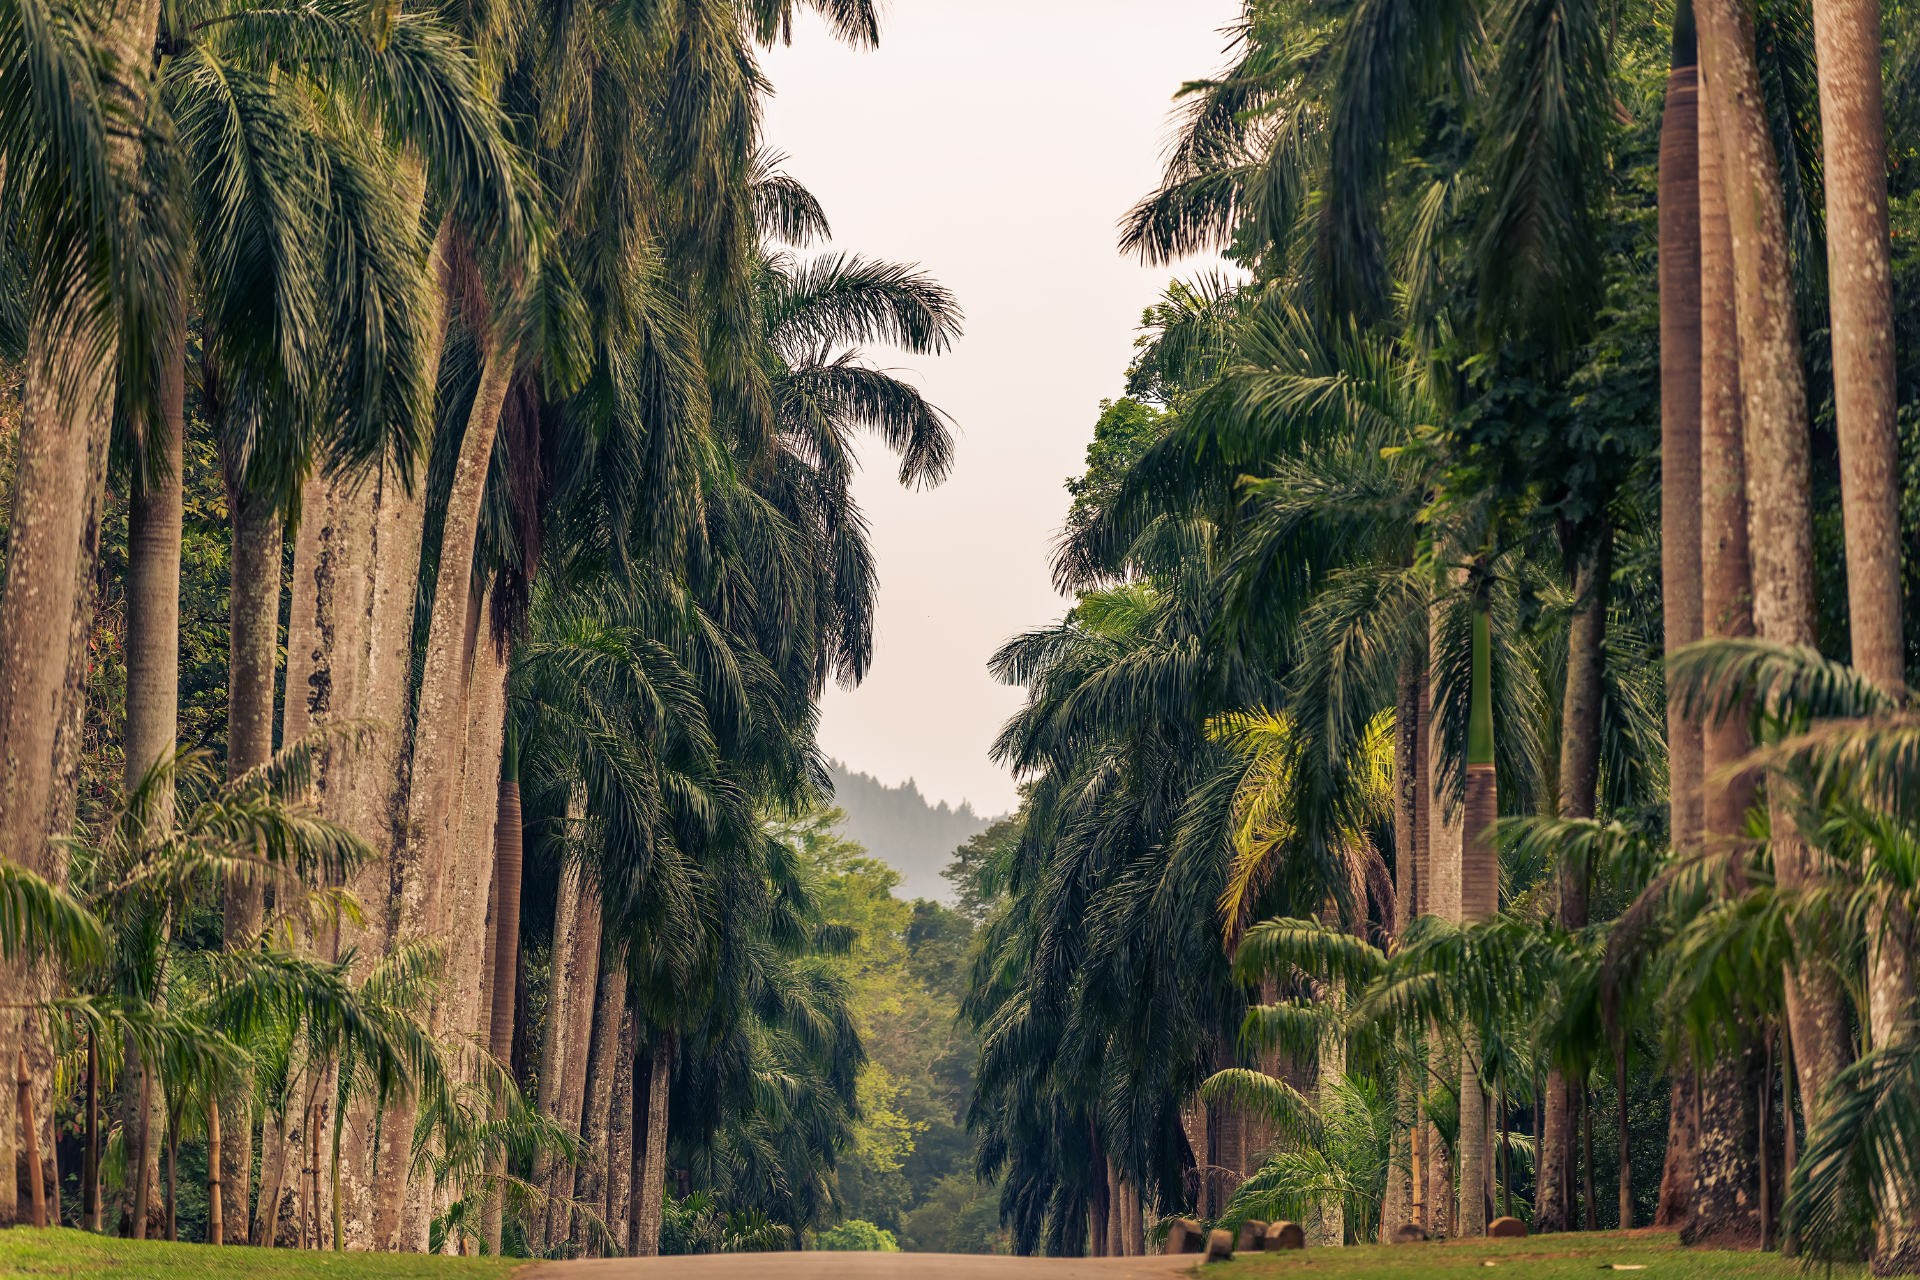 The avenue of palms in Peradeniya Botanical Garden in Kandy, Sri Lanka